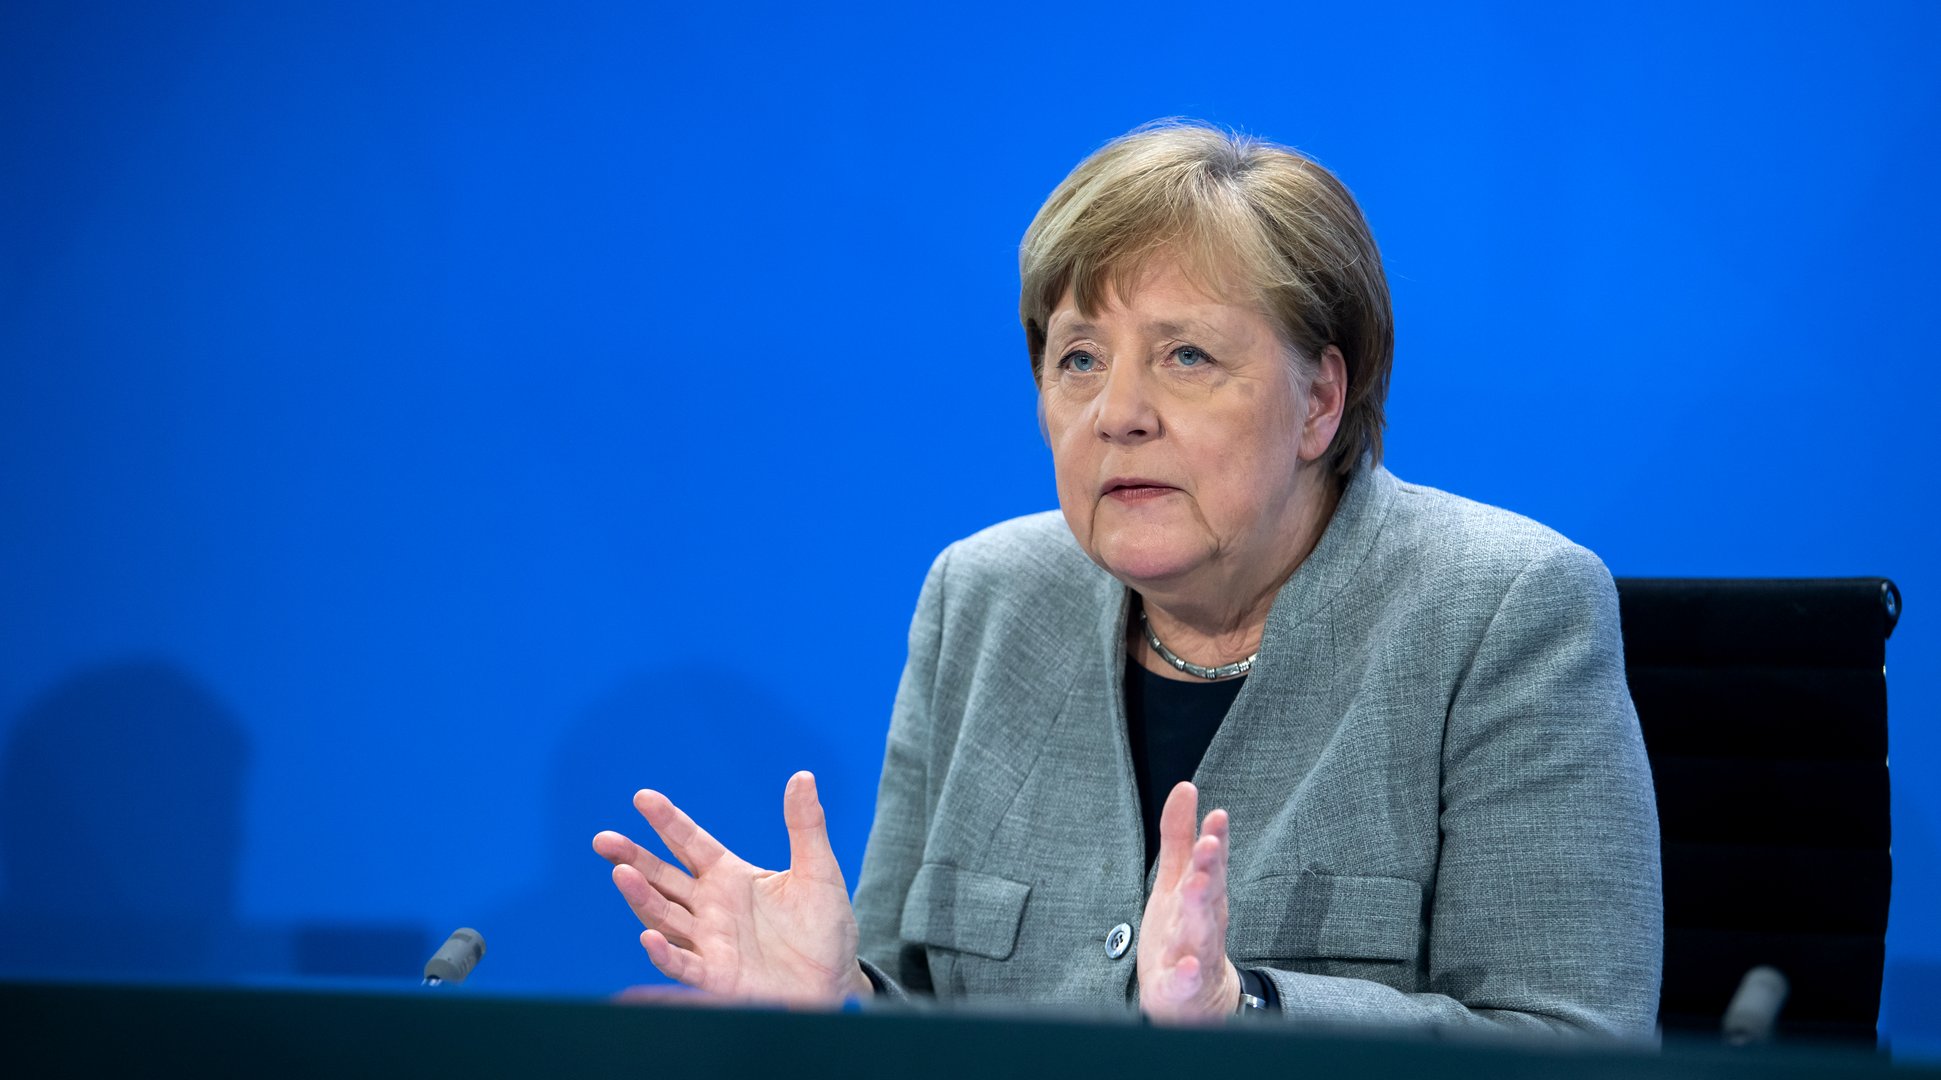 image After backlash, Merkel ditches stricter Easter lockdown